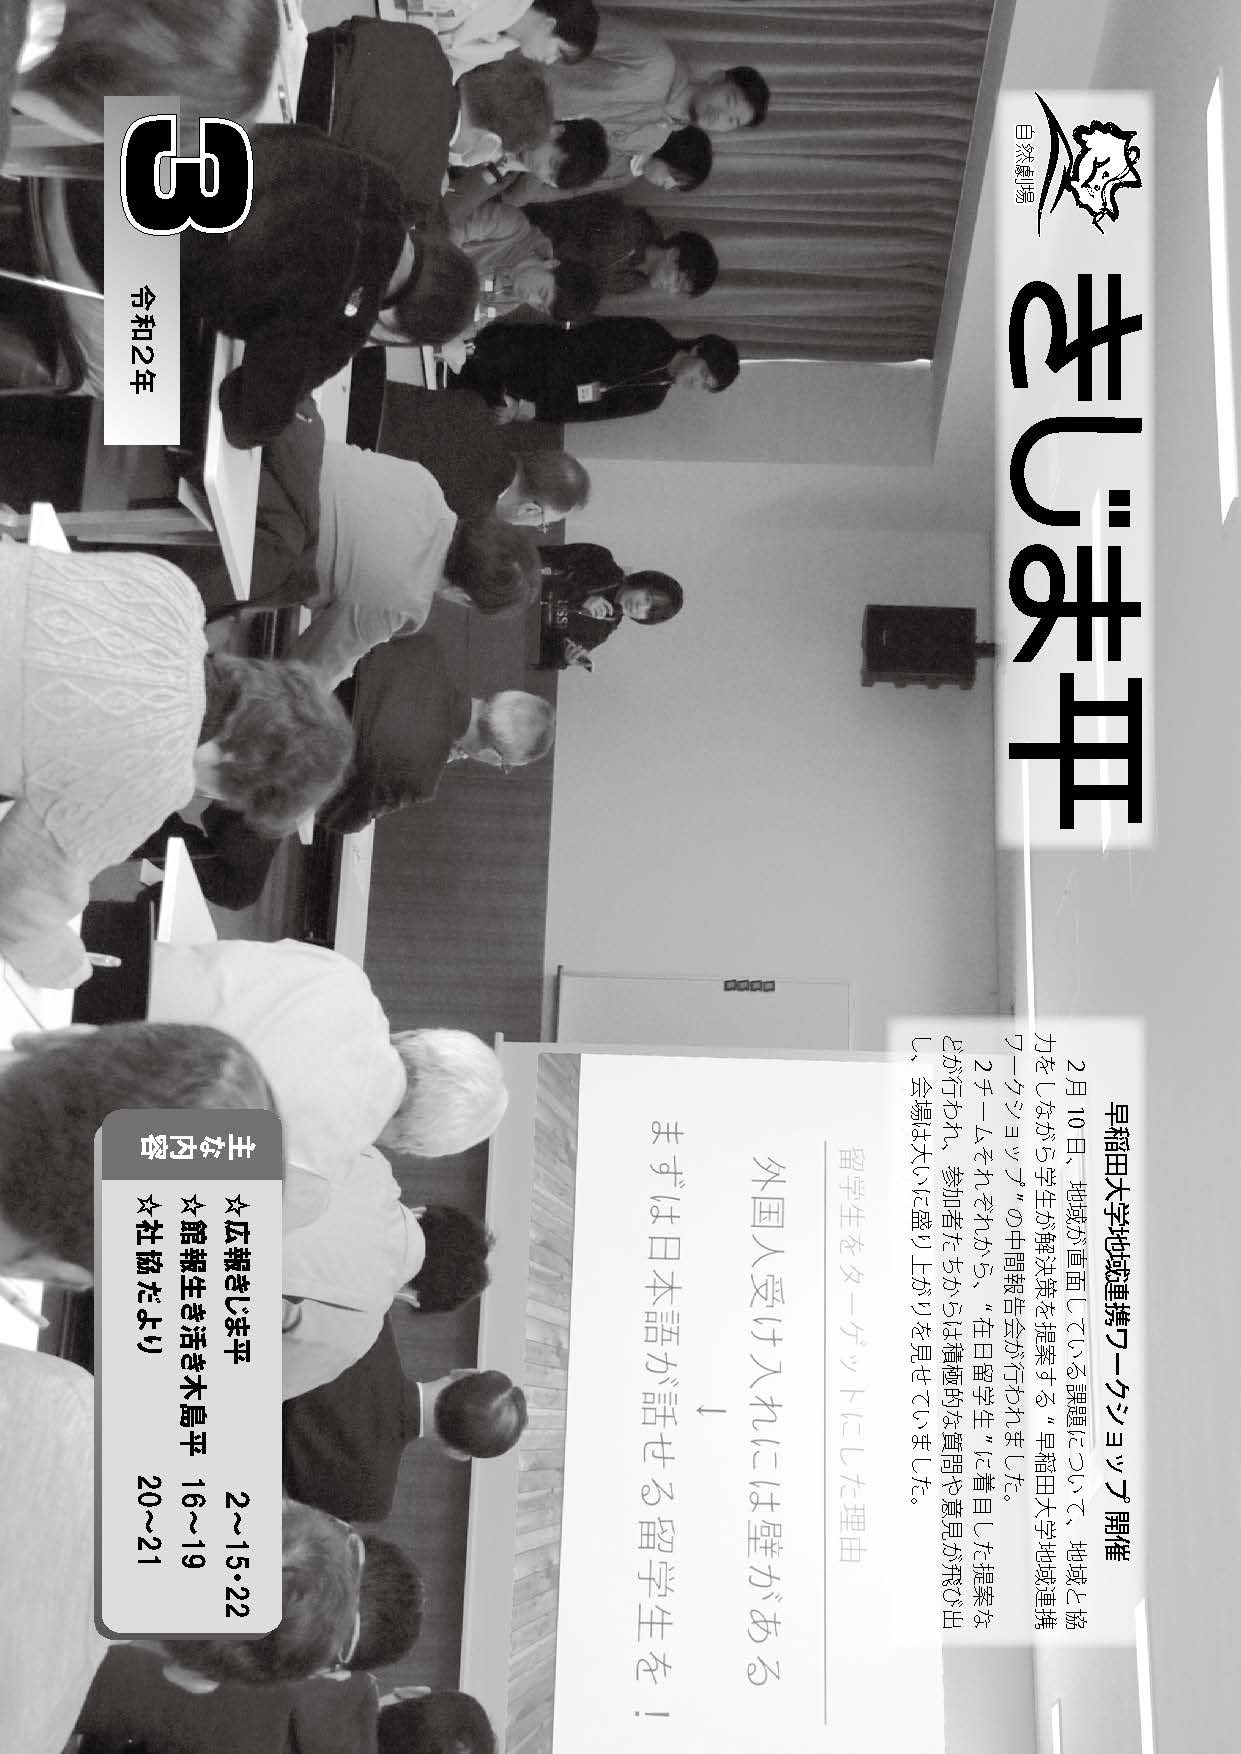 早稲田大学地域連携ワークショップの中間報告会の様子